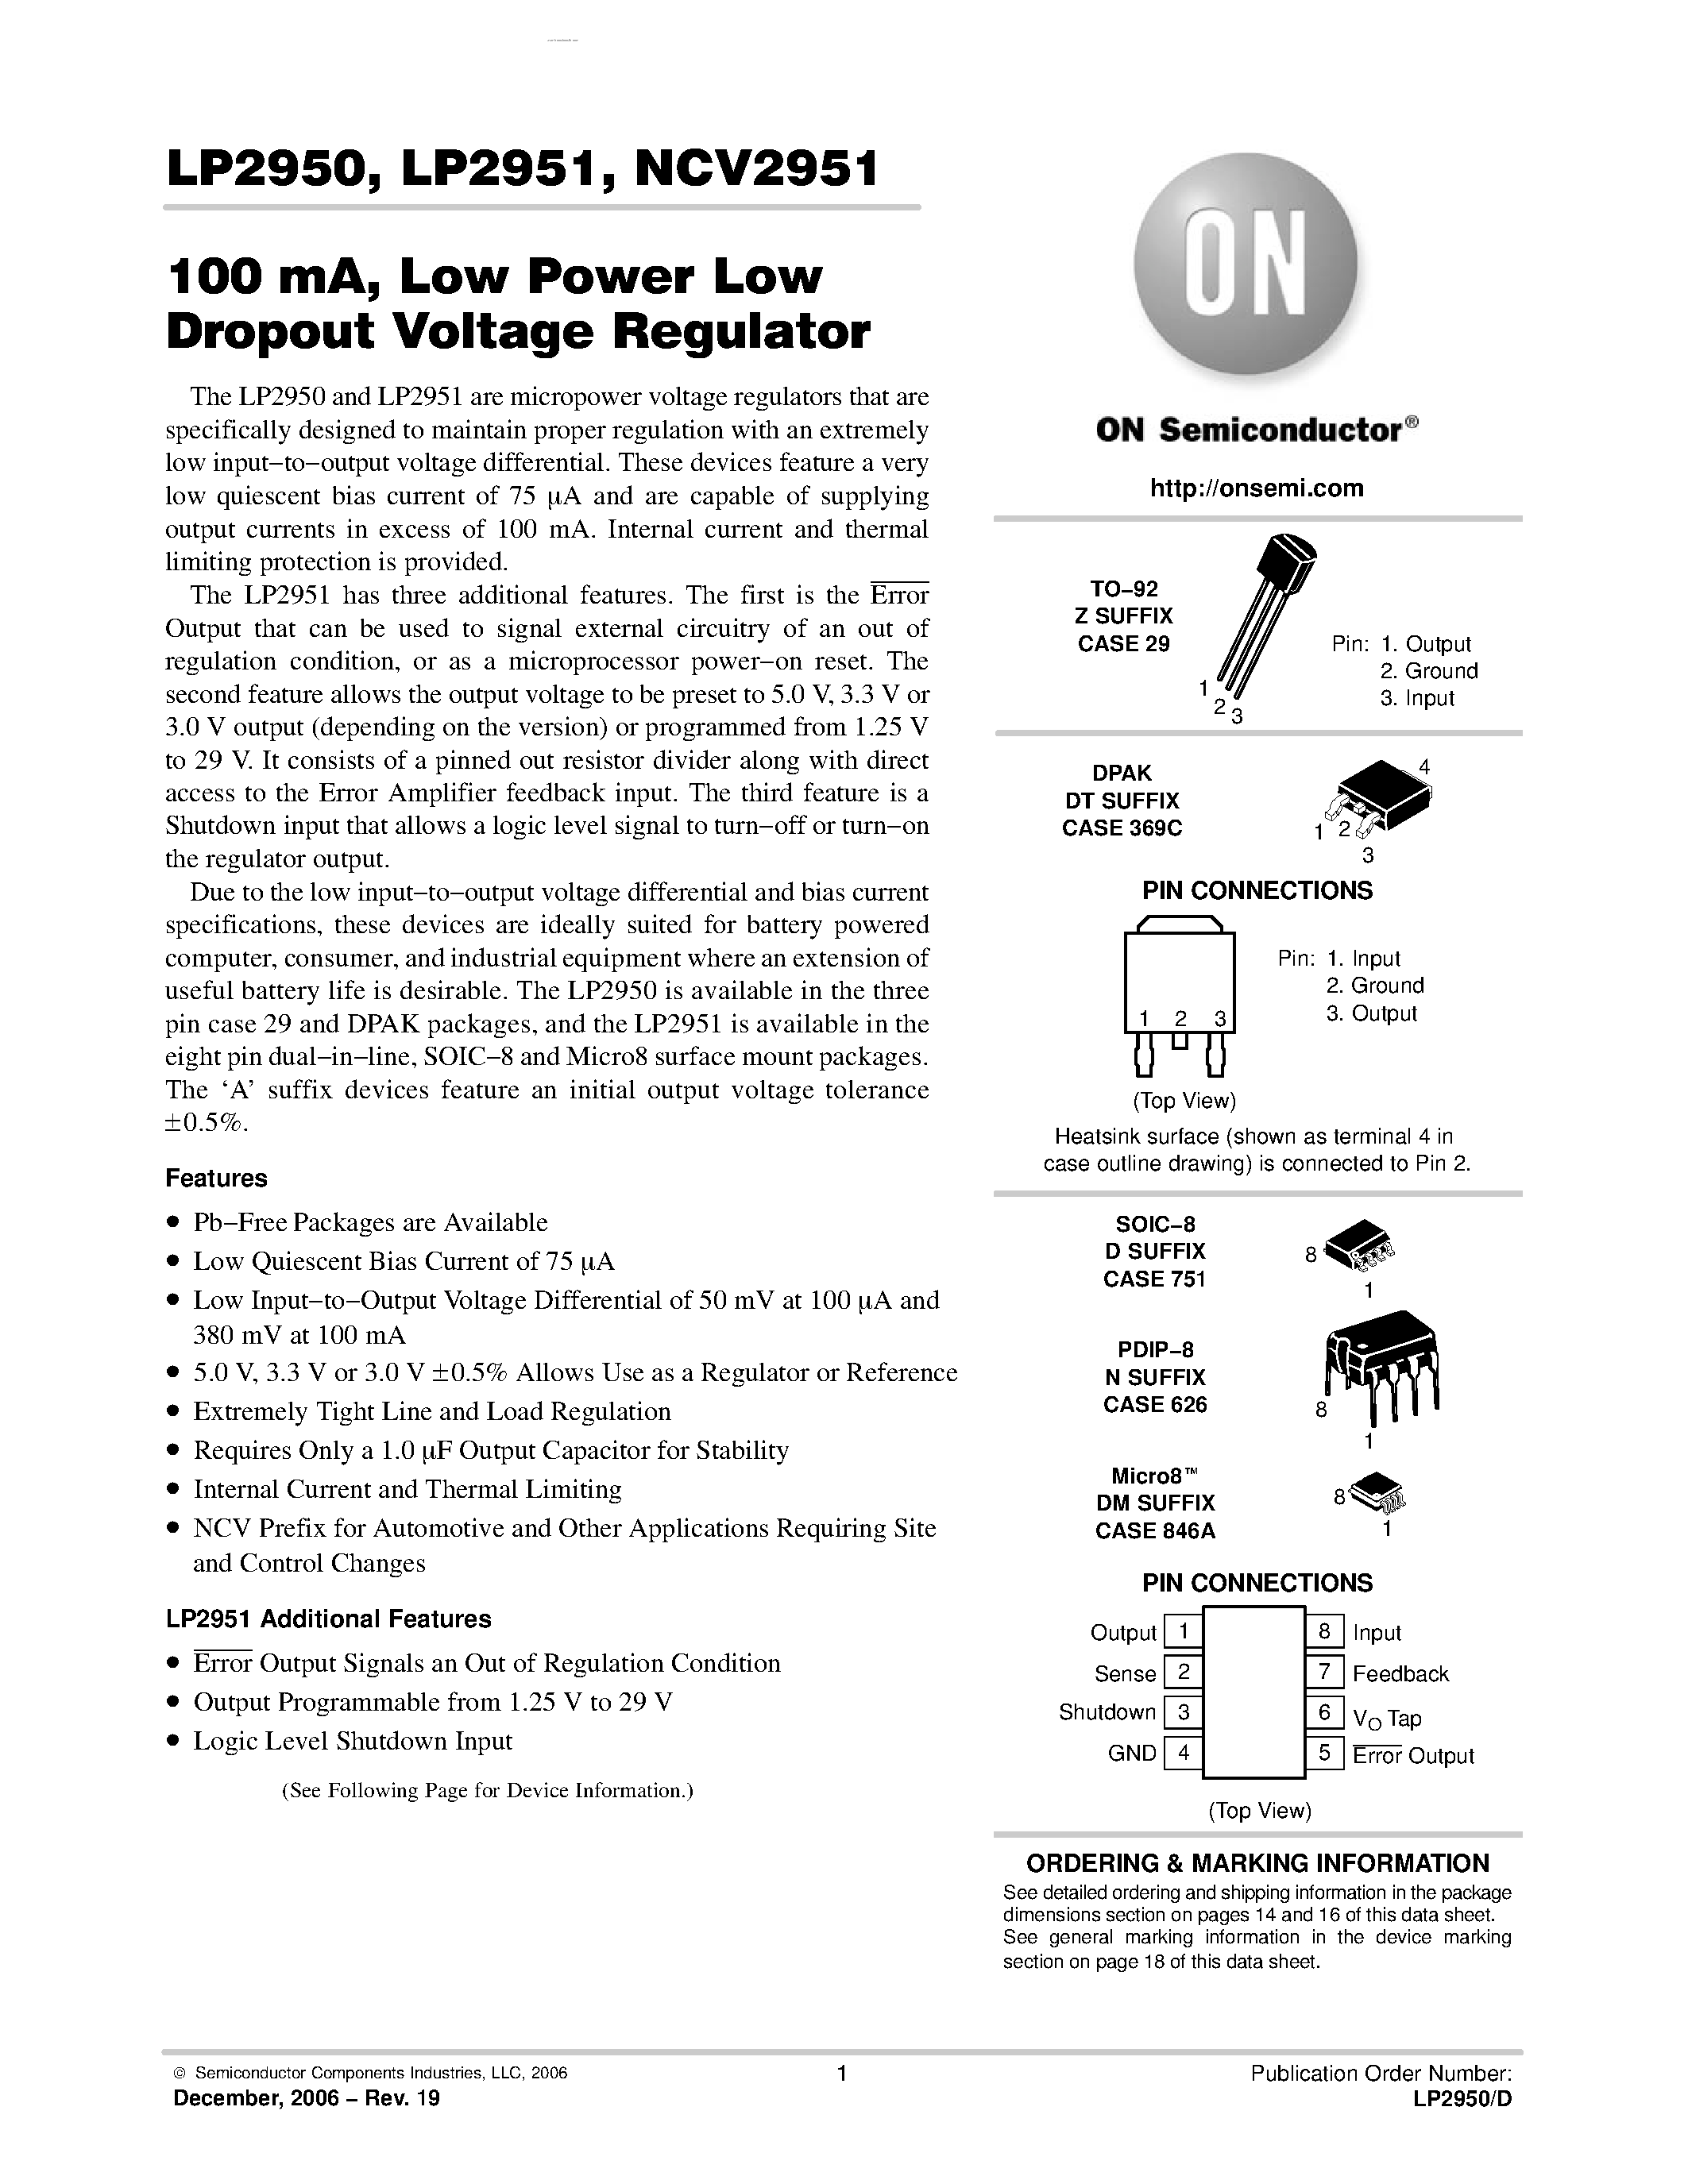 Даташит LP2950 - (LP2950 / LP2951) Low Power Low Dropout Voltage Regulator страница 1